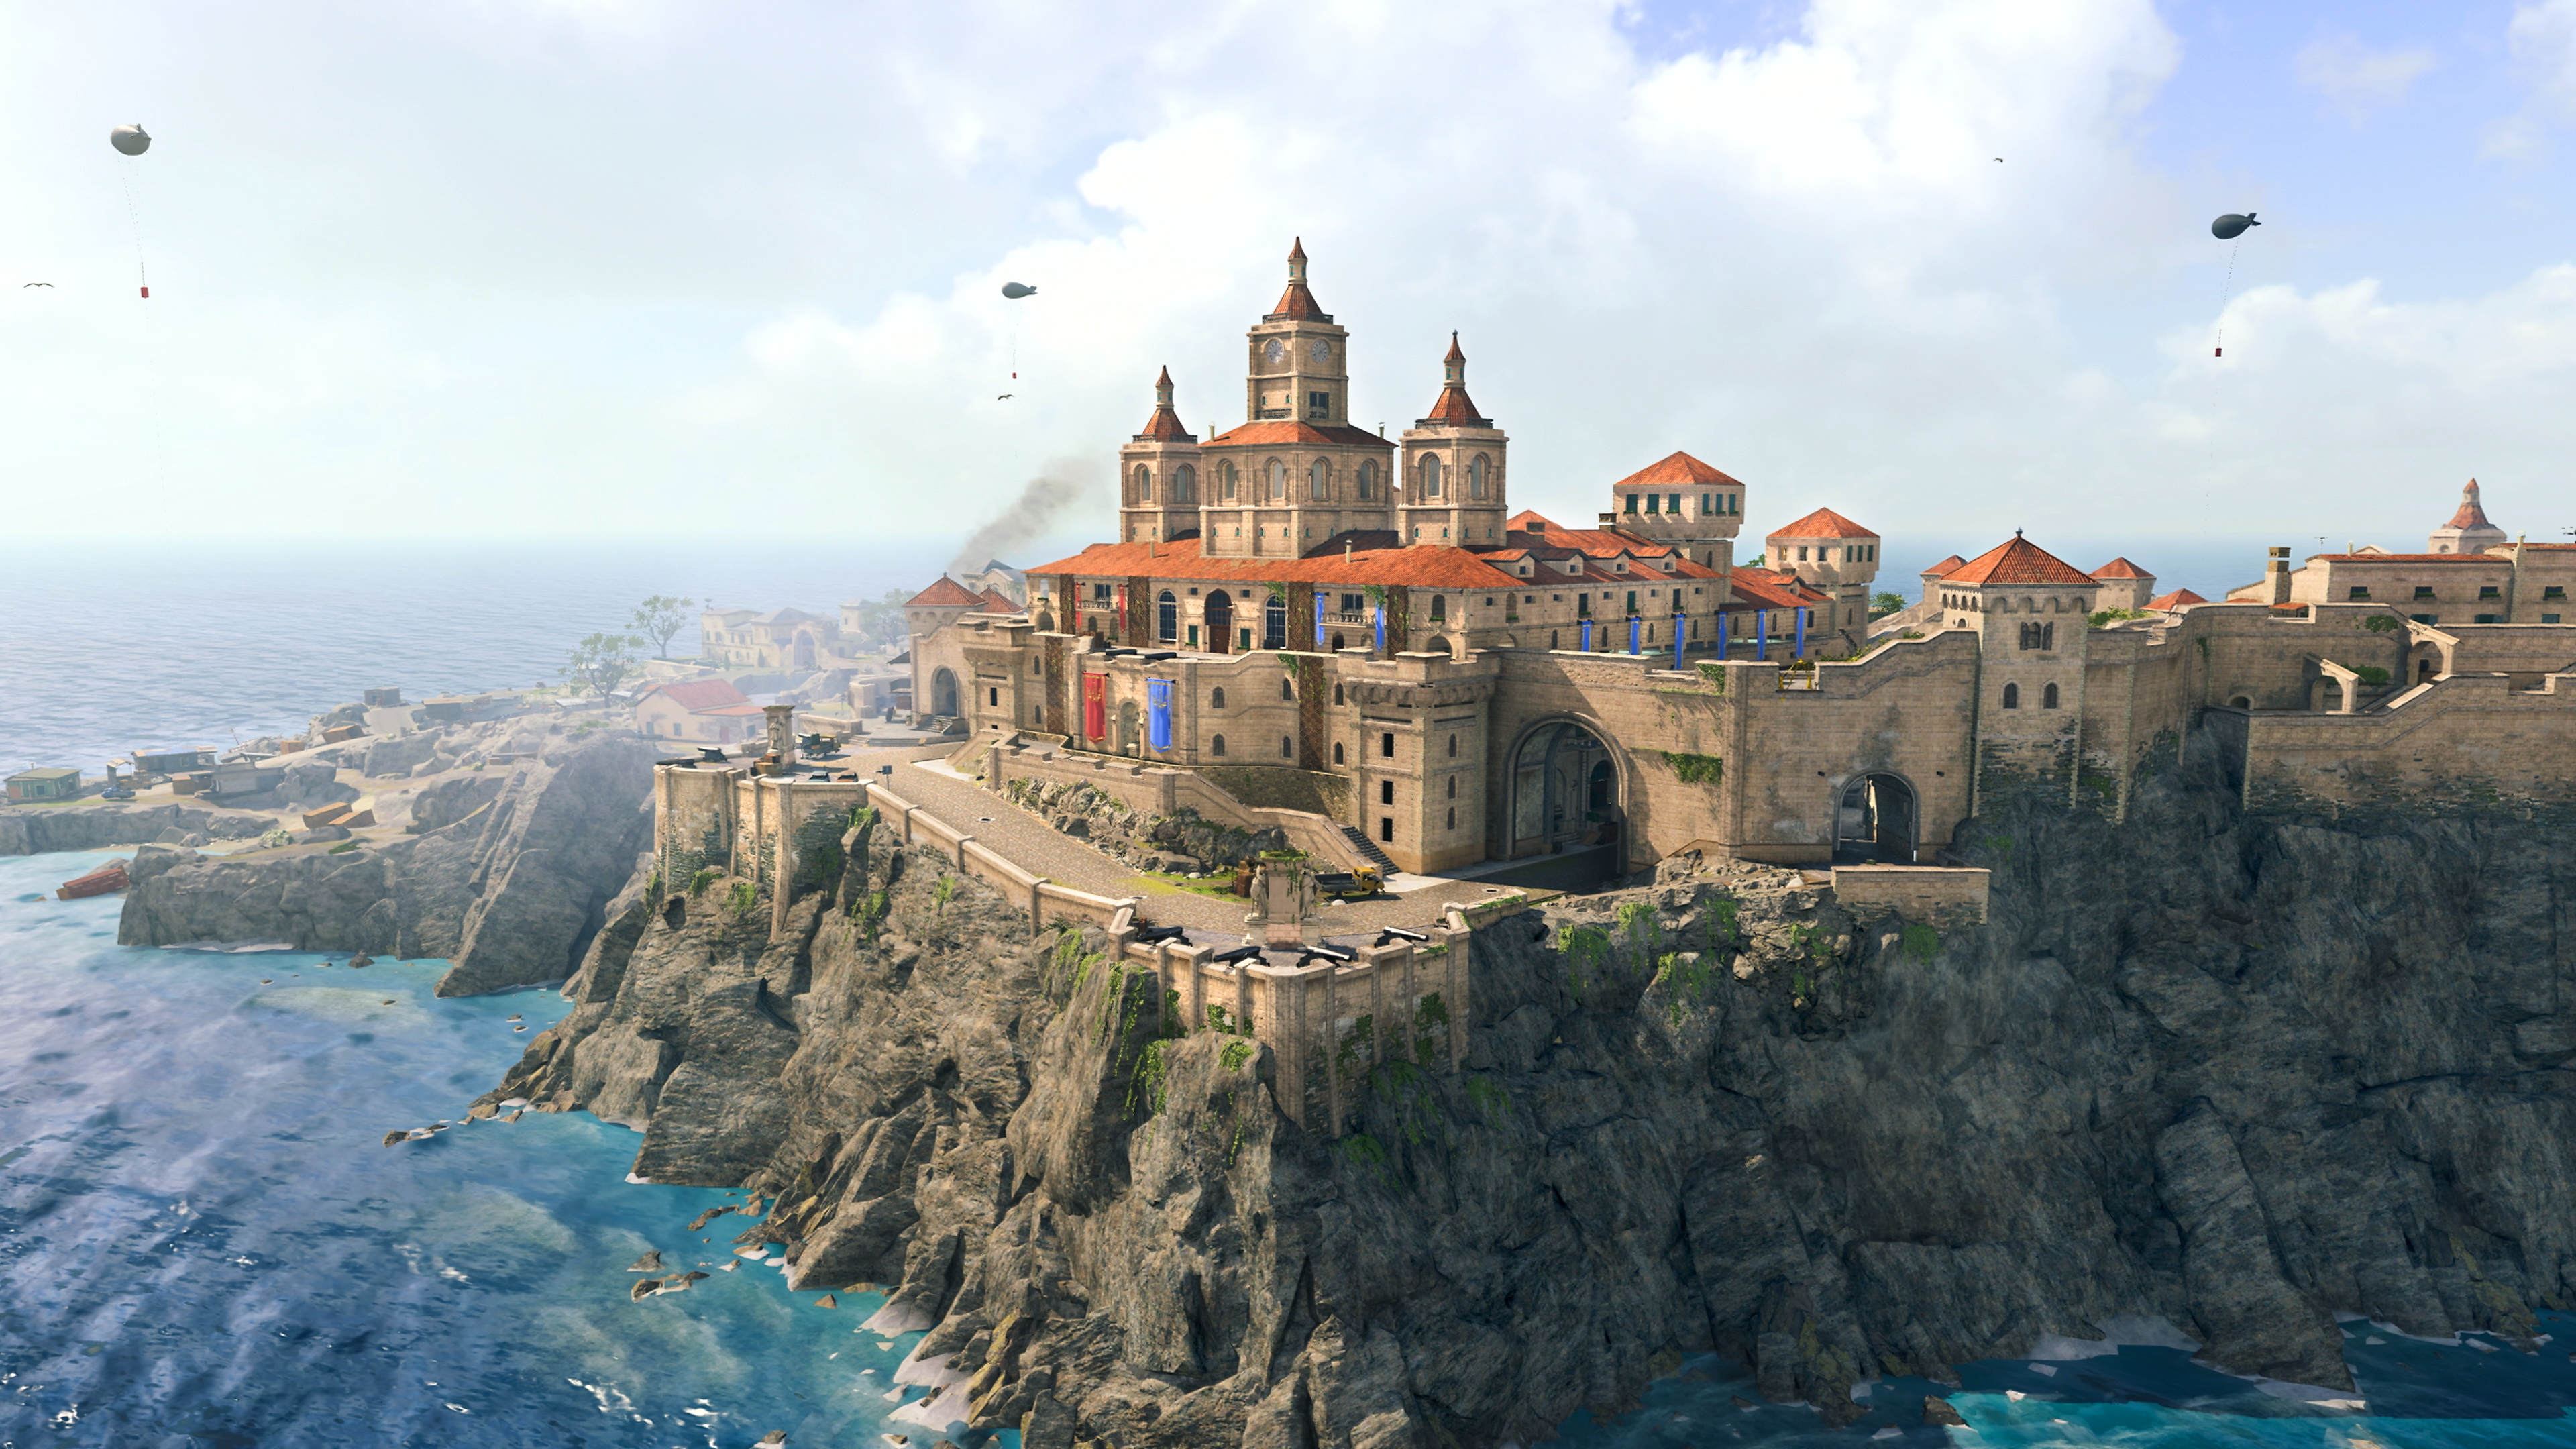 لقطة شاشة من لعبة Call of Duty Warzone لخريطة جديدة "حصن الثروات" تُظهر مبنى كبير بجوار منحدر بجانب المحيط